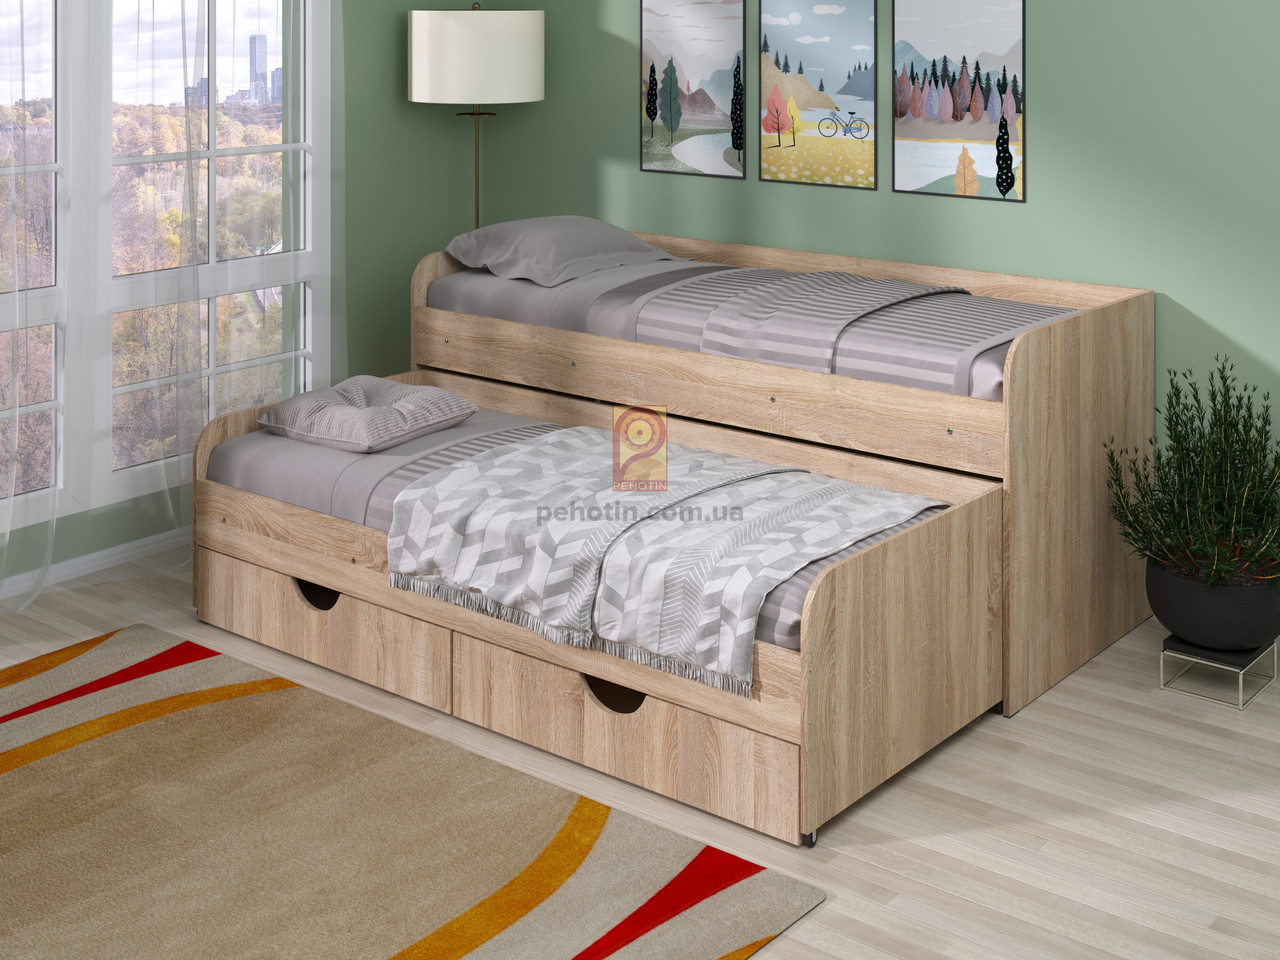 Дитяче ліжко IdealMebel Соня-5, ліжко з висувним спальним місцем і ящиками, ліжко-трансформер